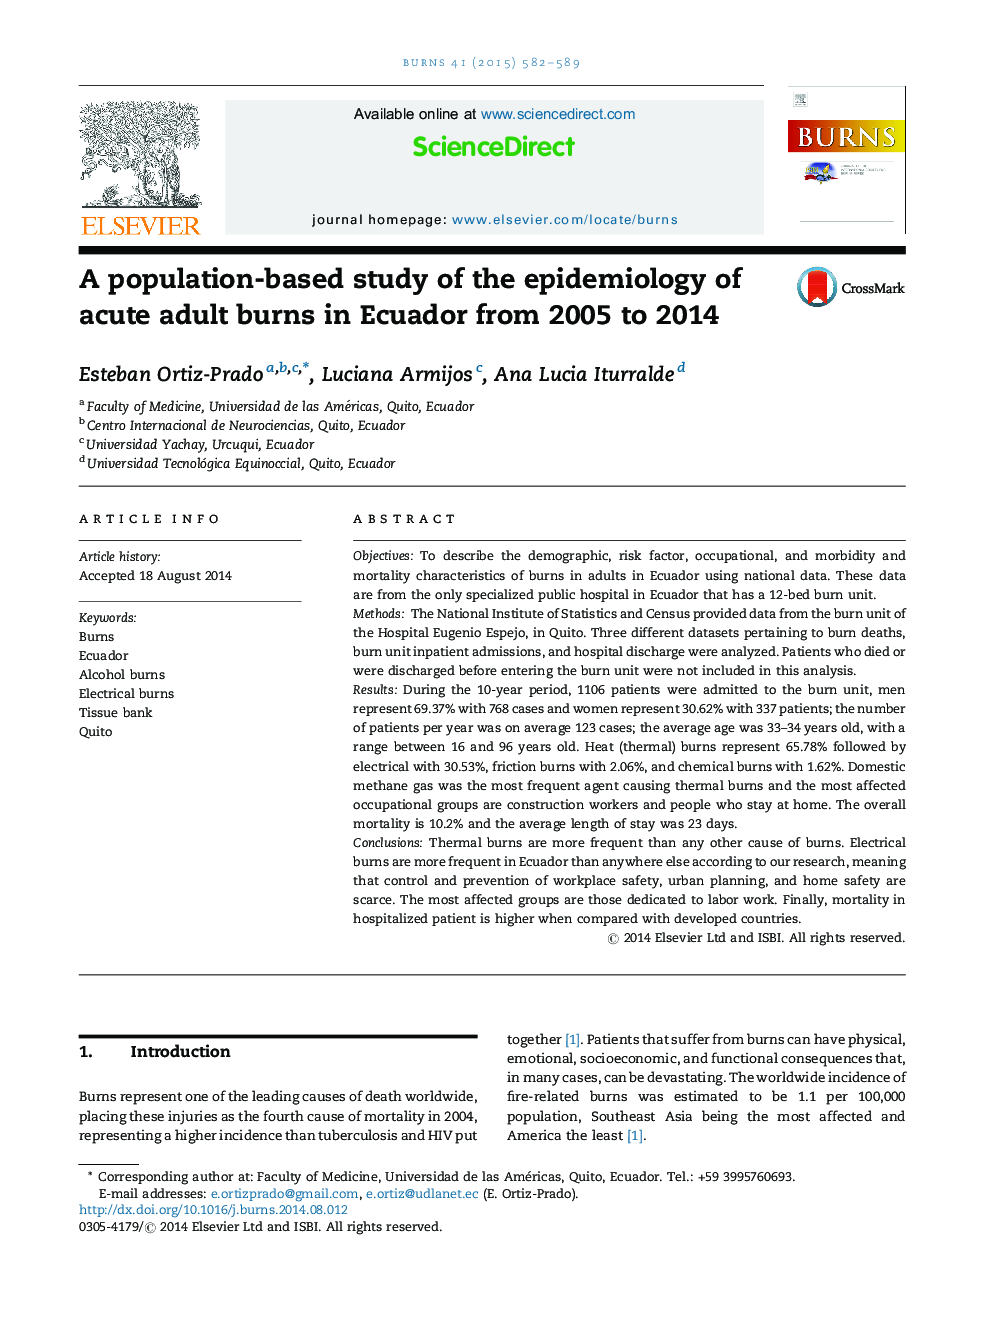 مطالعه مبتنی بر جمعیت اپیدمیولوژی از سوختگی های حاد بزرگسالان در اکوادور از سال 2005 تا 2014